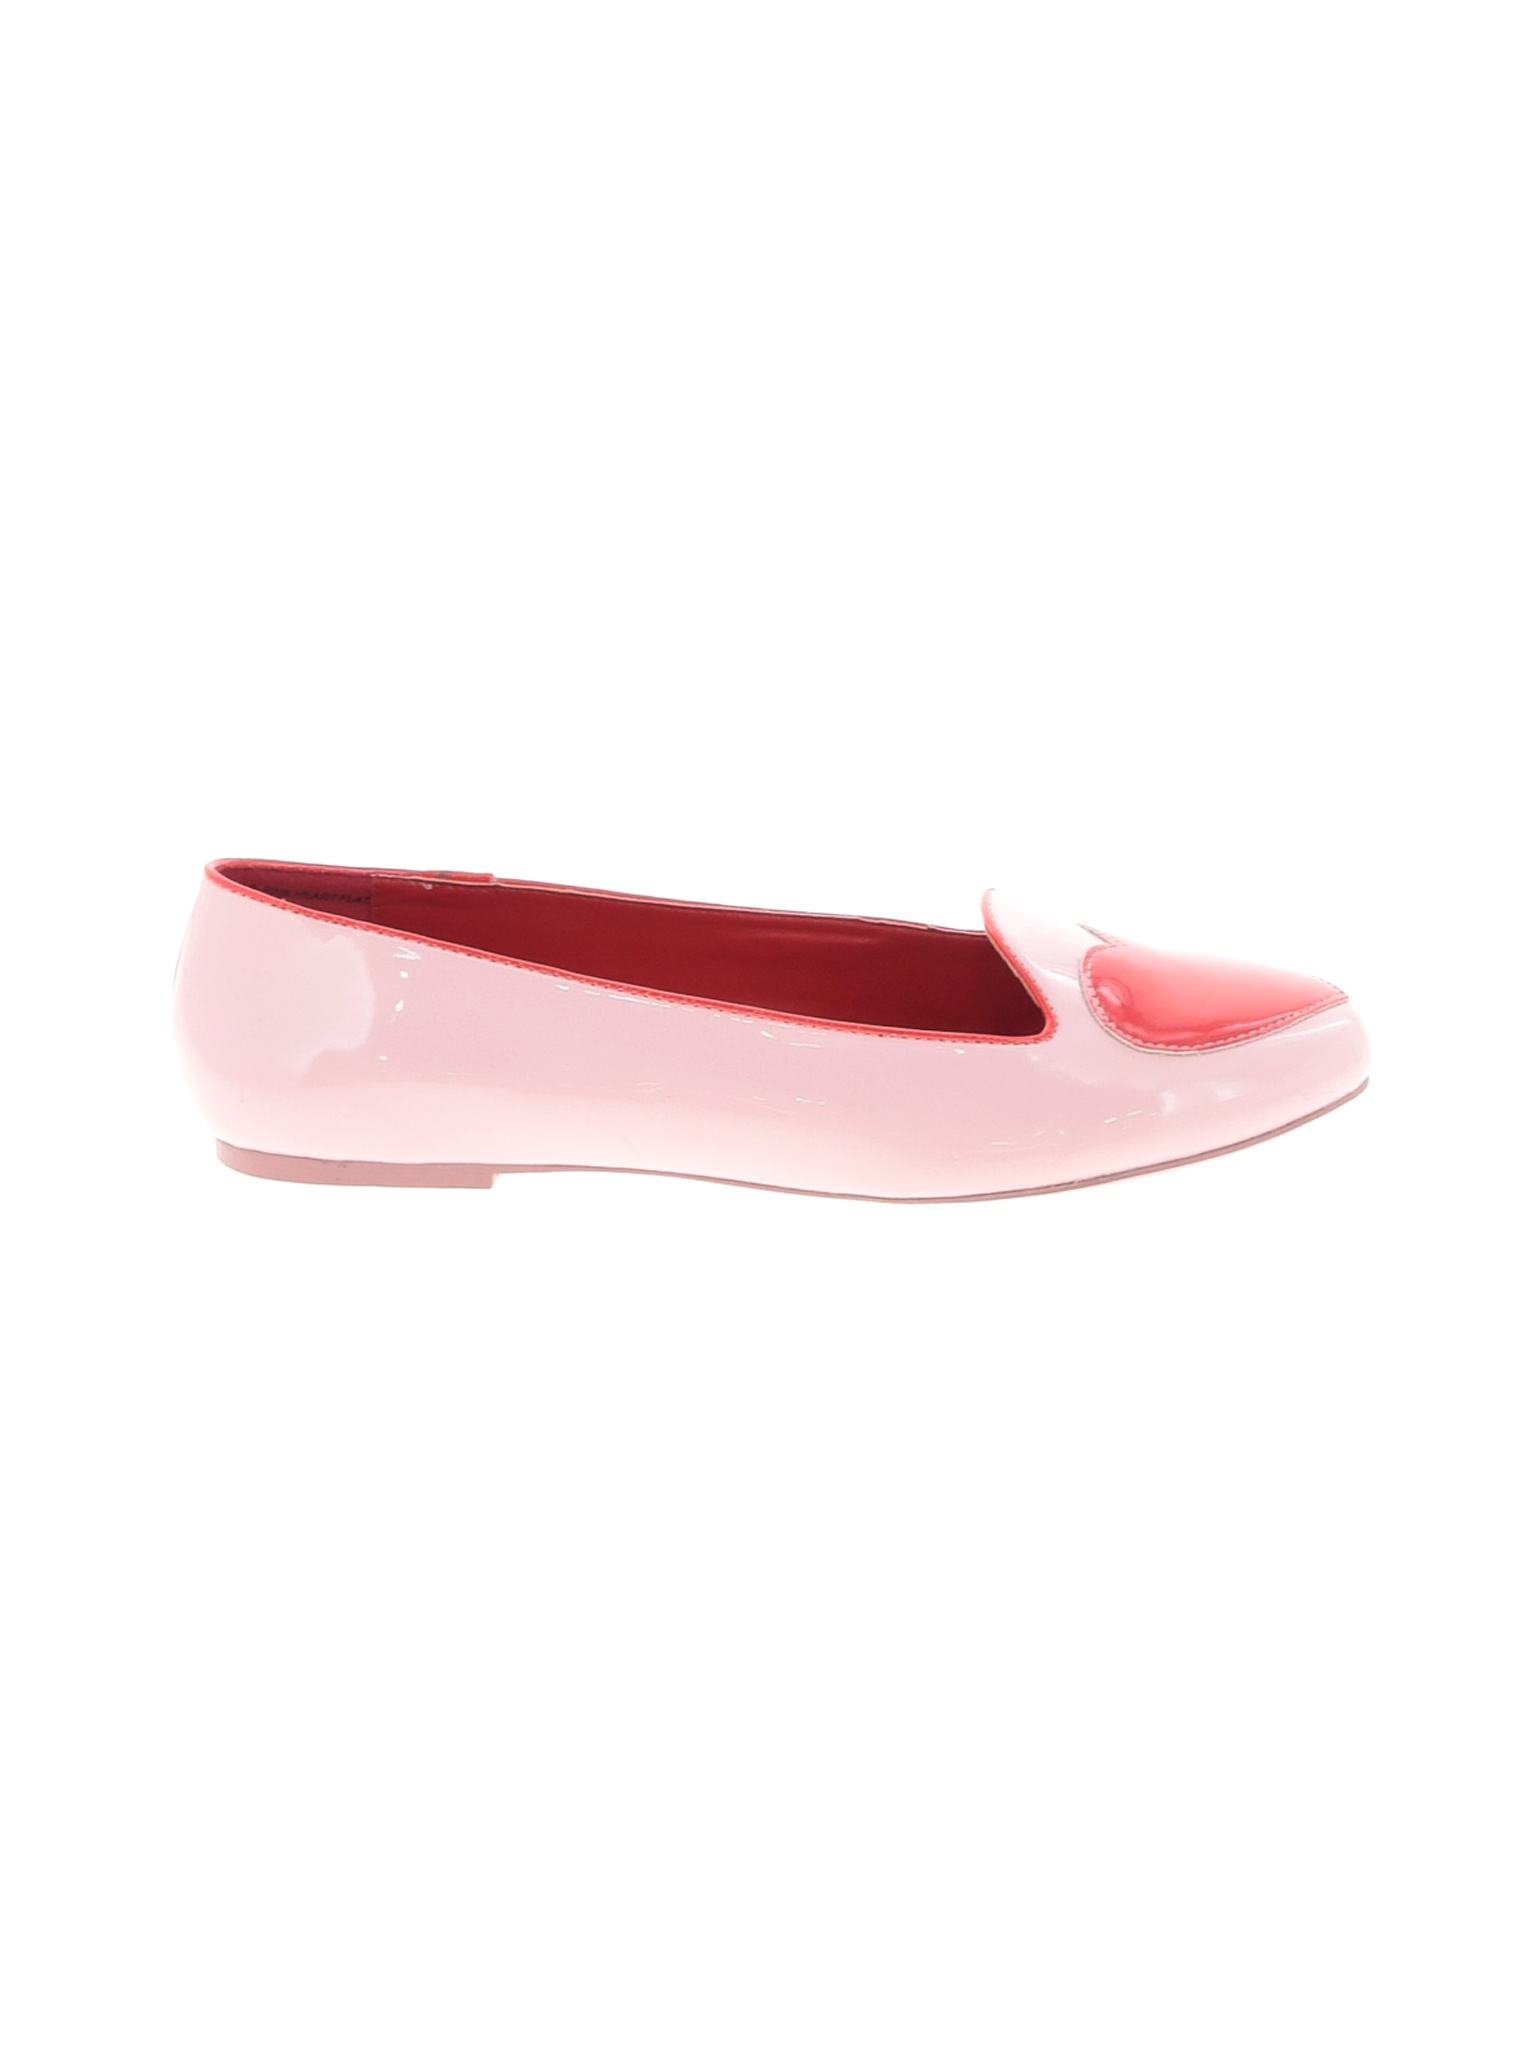 Assorted Brands Women Pink Flats US 10 | eBay